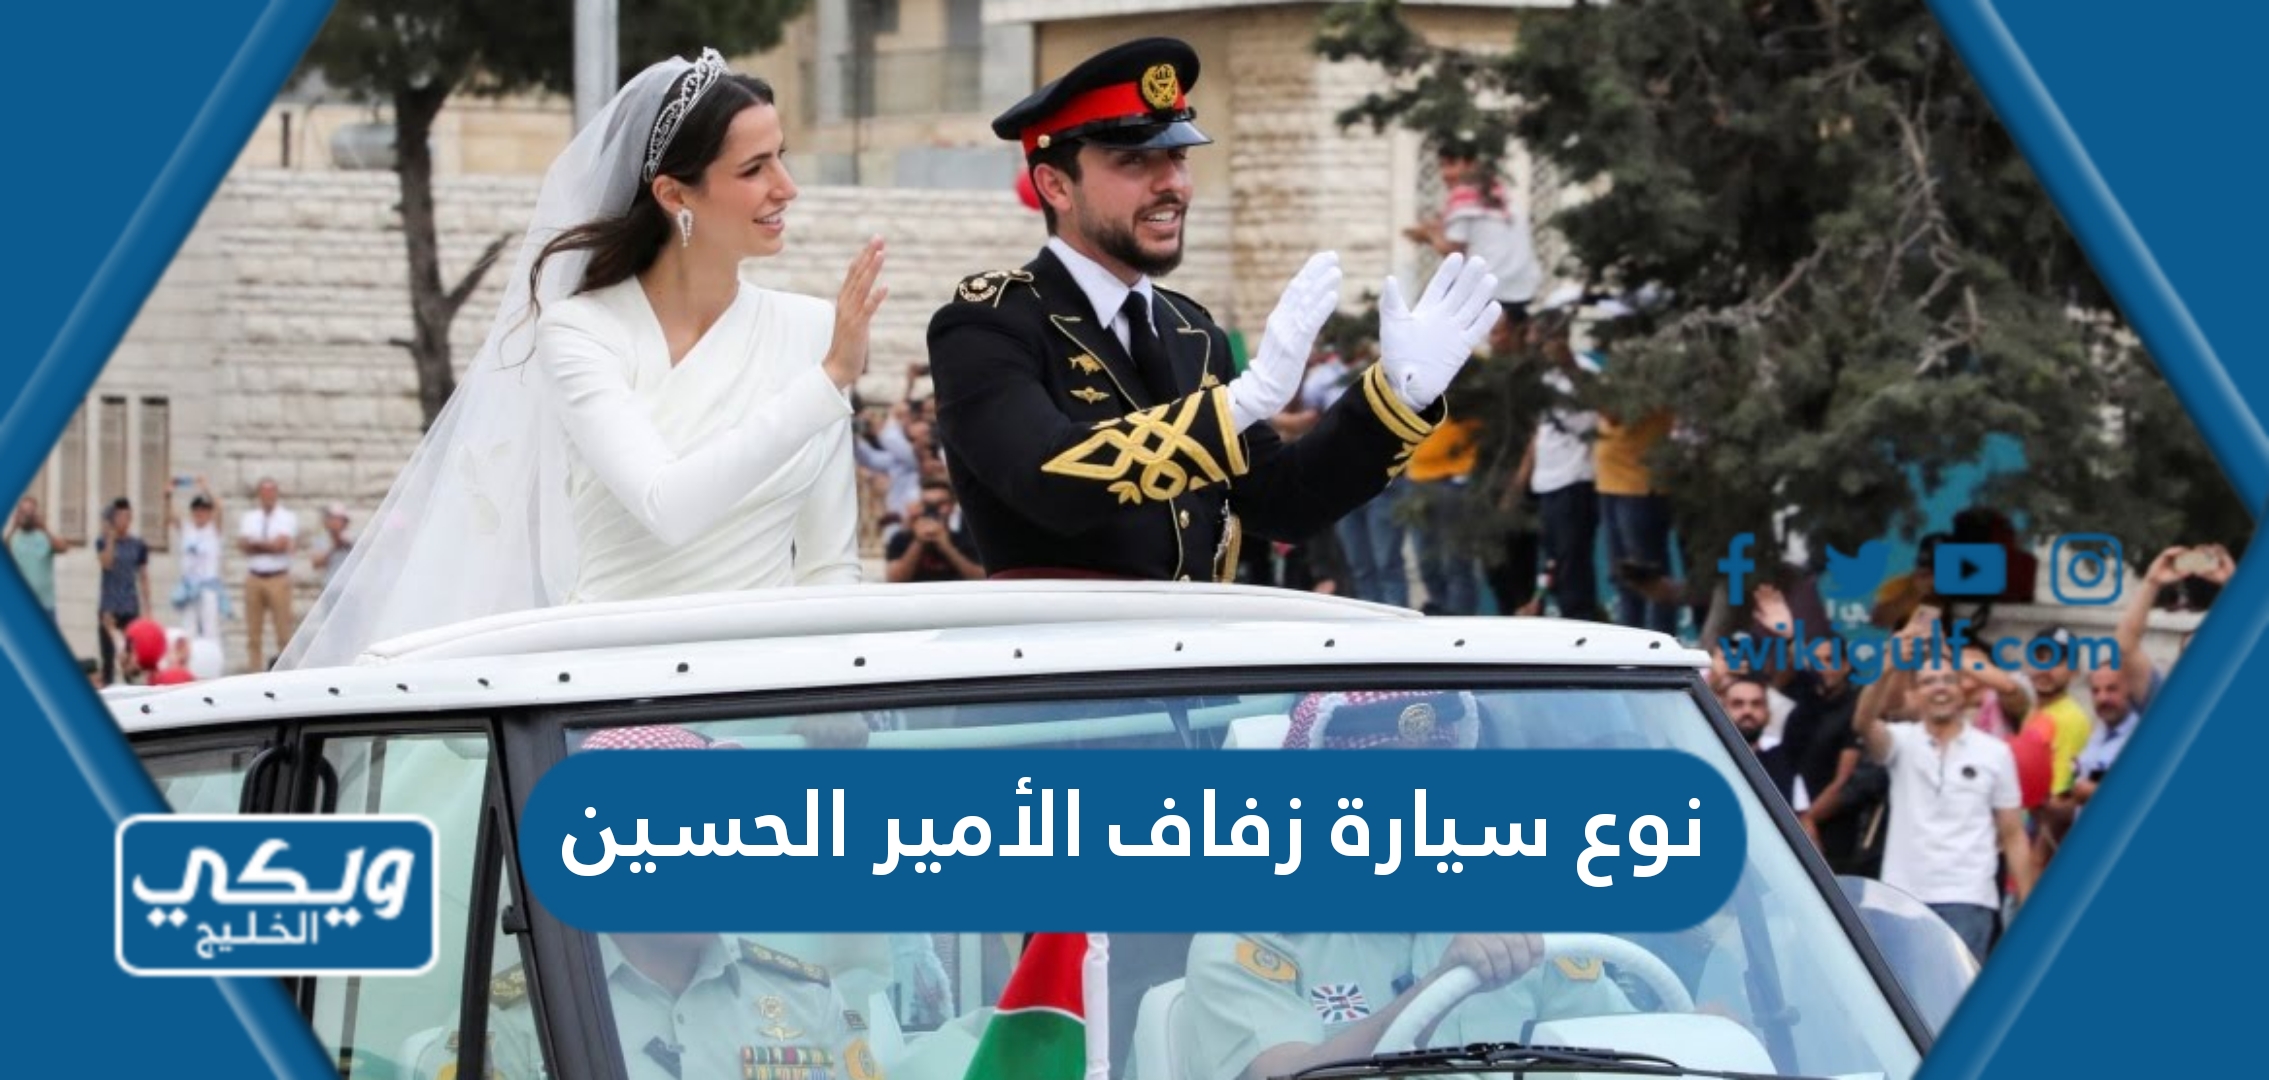 نوع سيارة زفاف الأمير الحسين بالصور